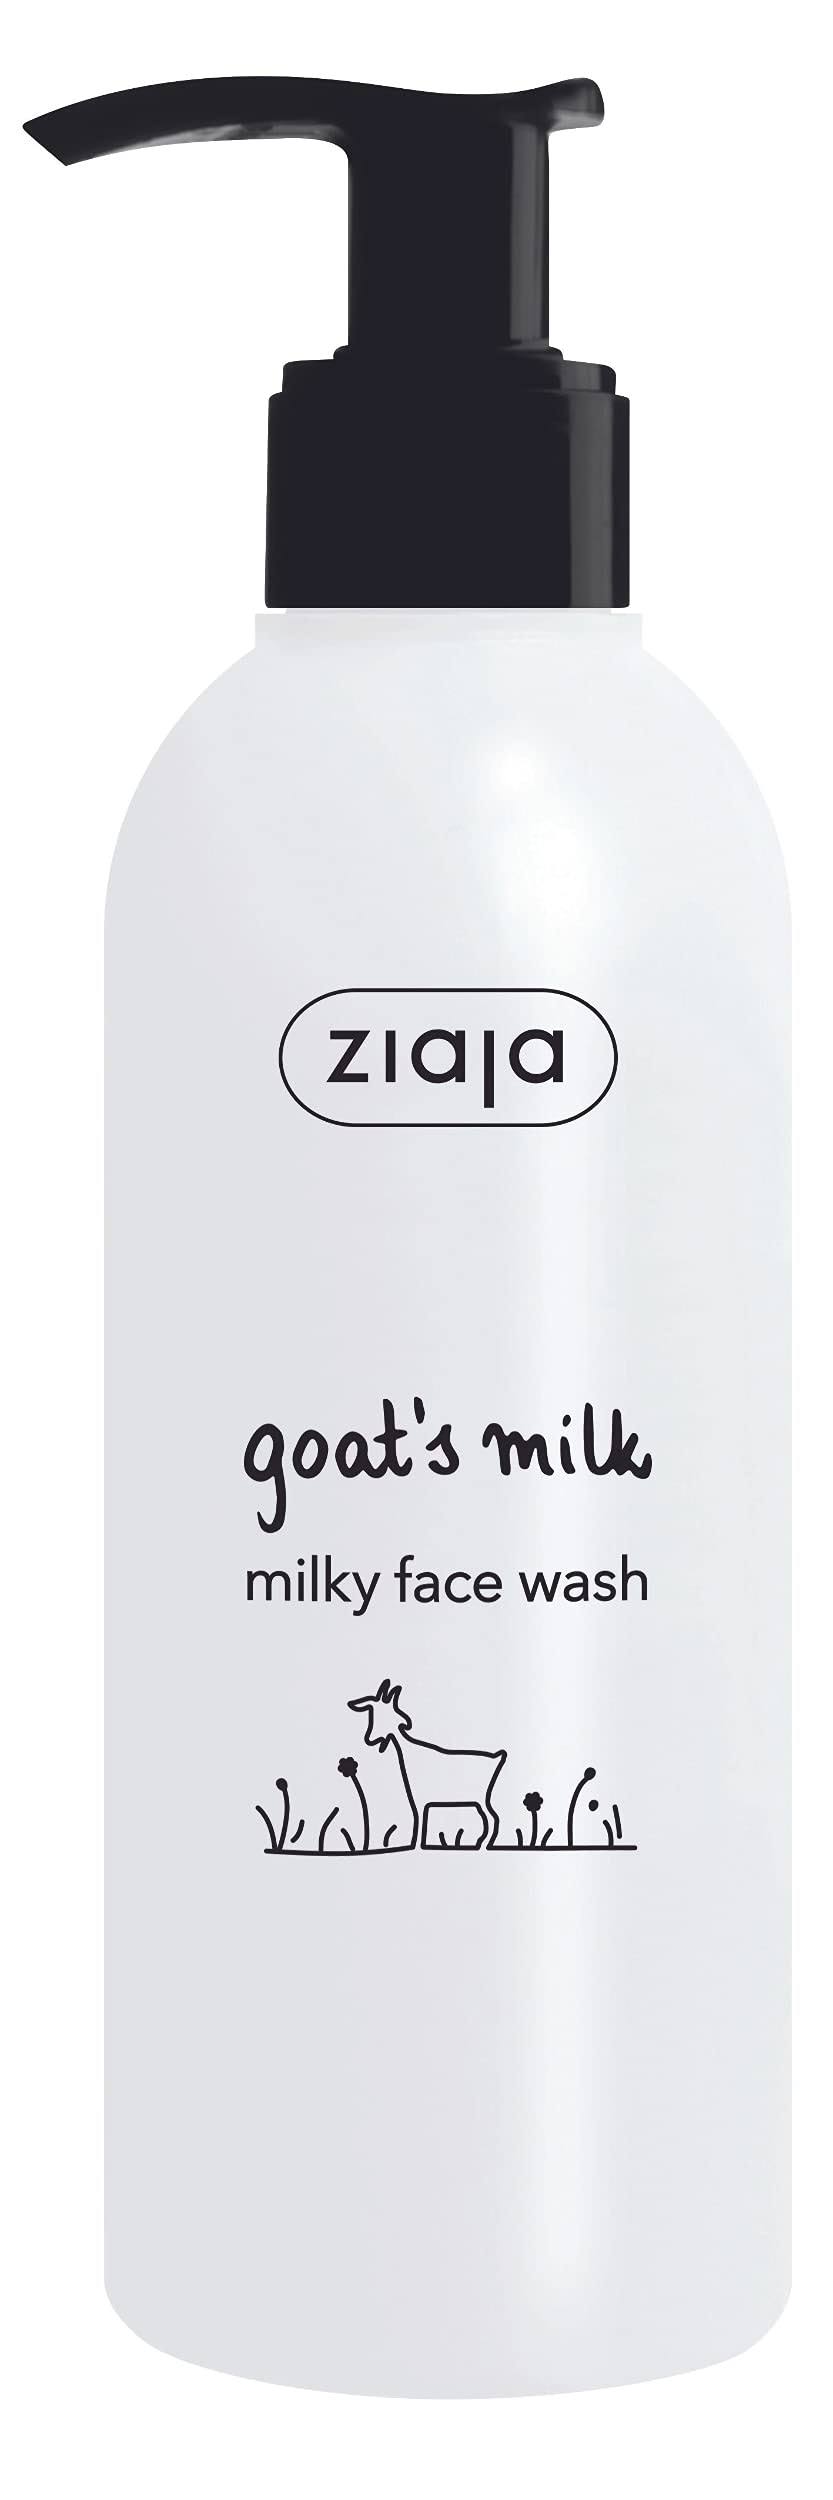 Ziaja Goat's Milk Milky Face Wash - 200ml